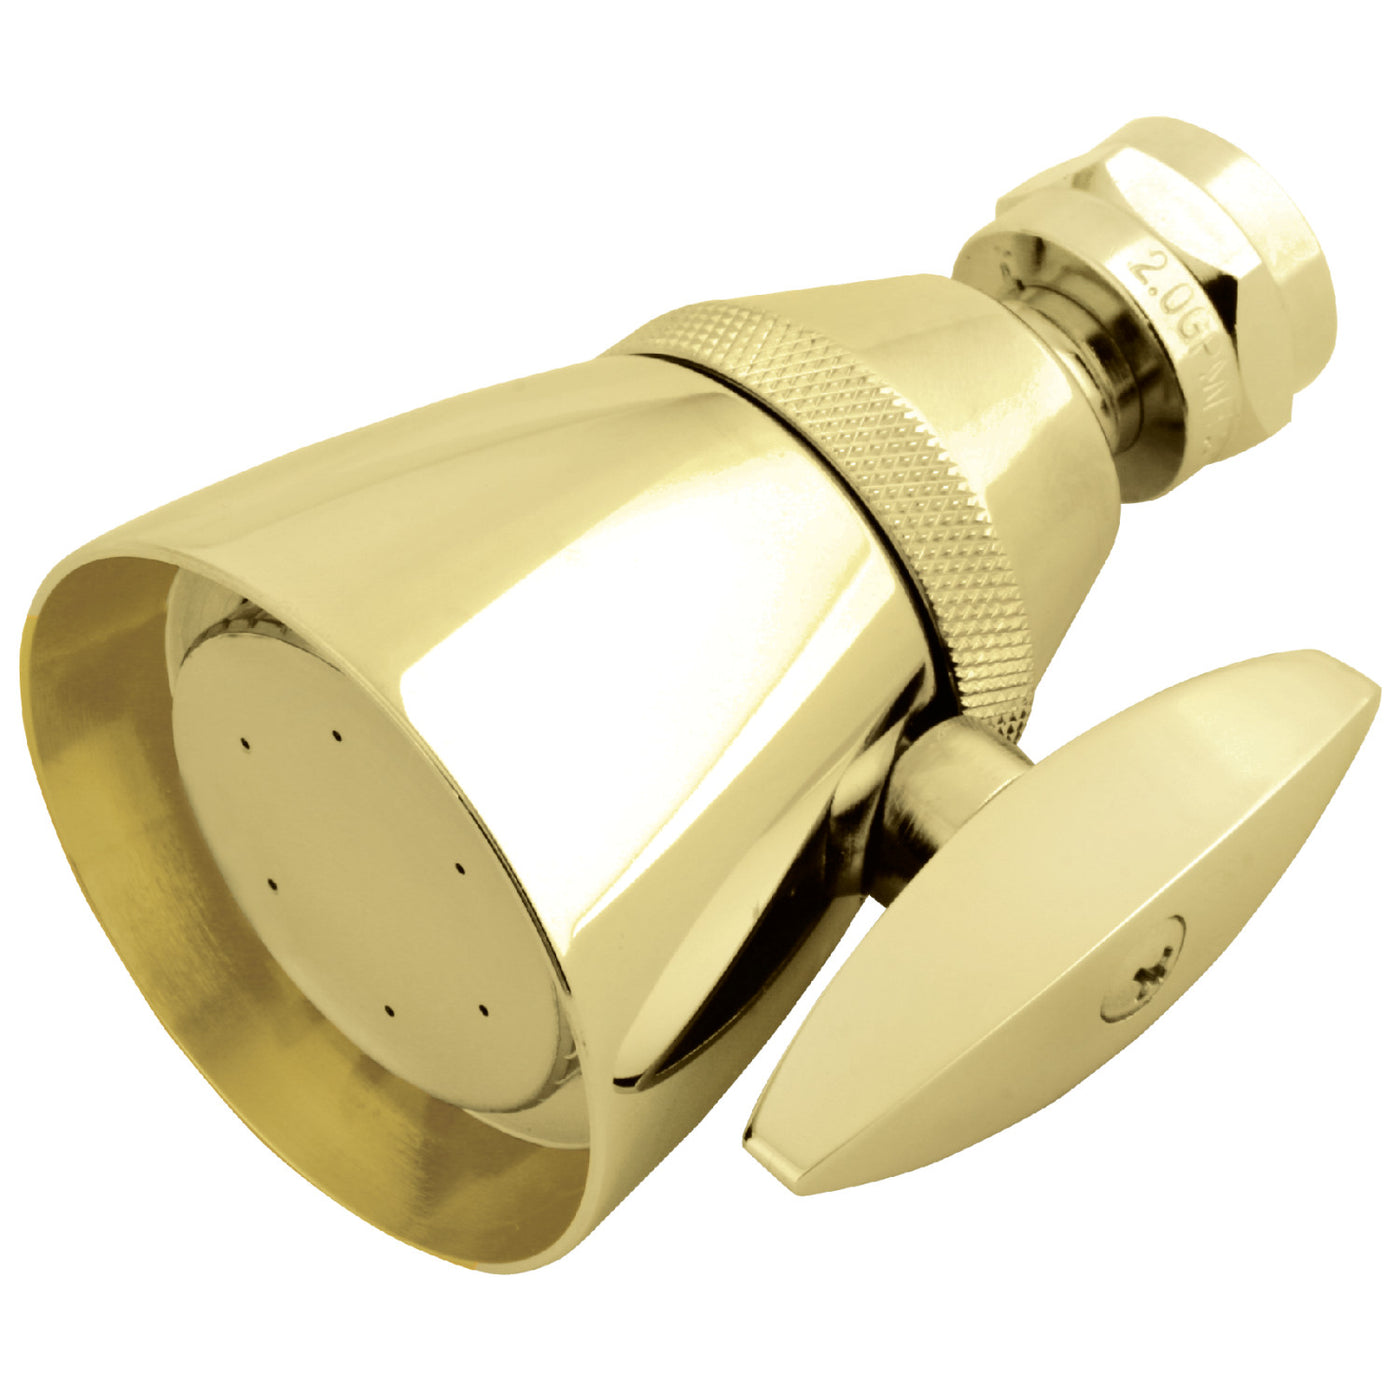 Elements of Design DK132A2 2-1/4-Inch Adjustable Shower Head, Polished Brass